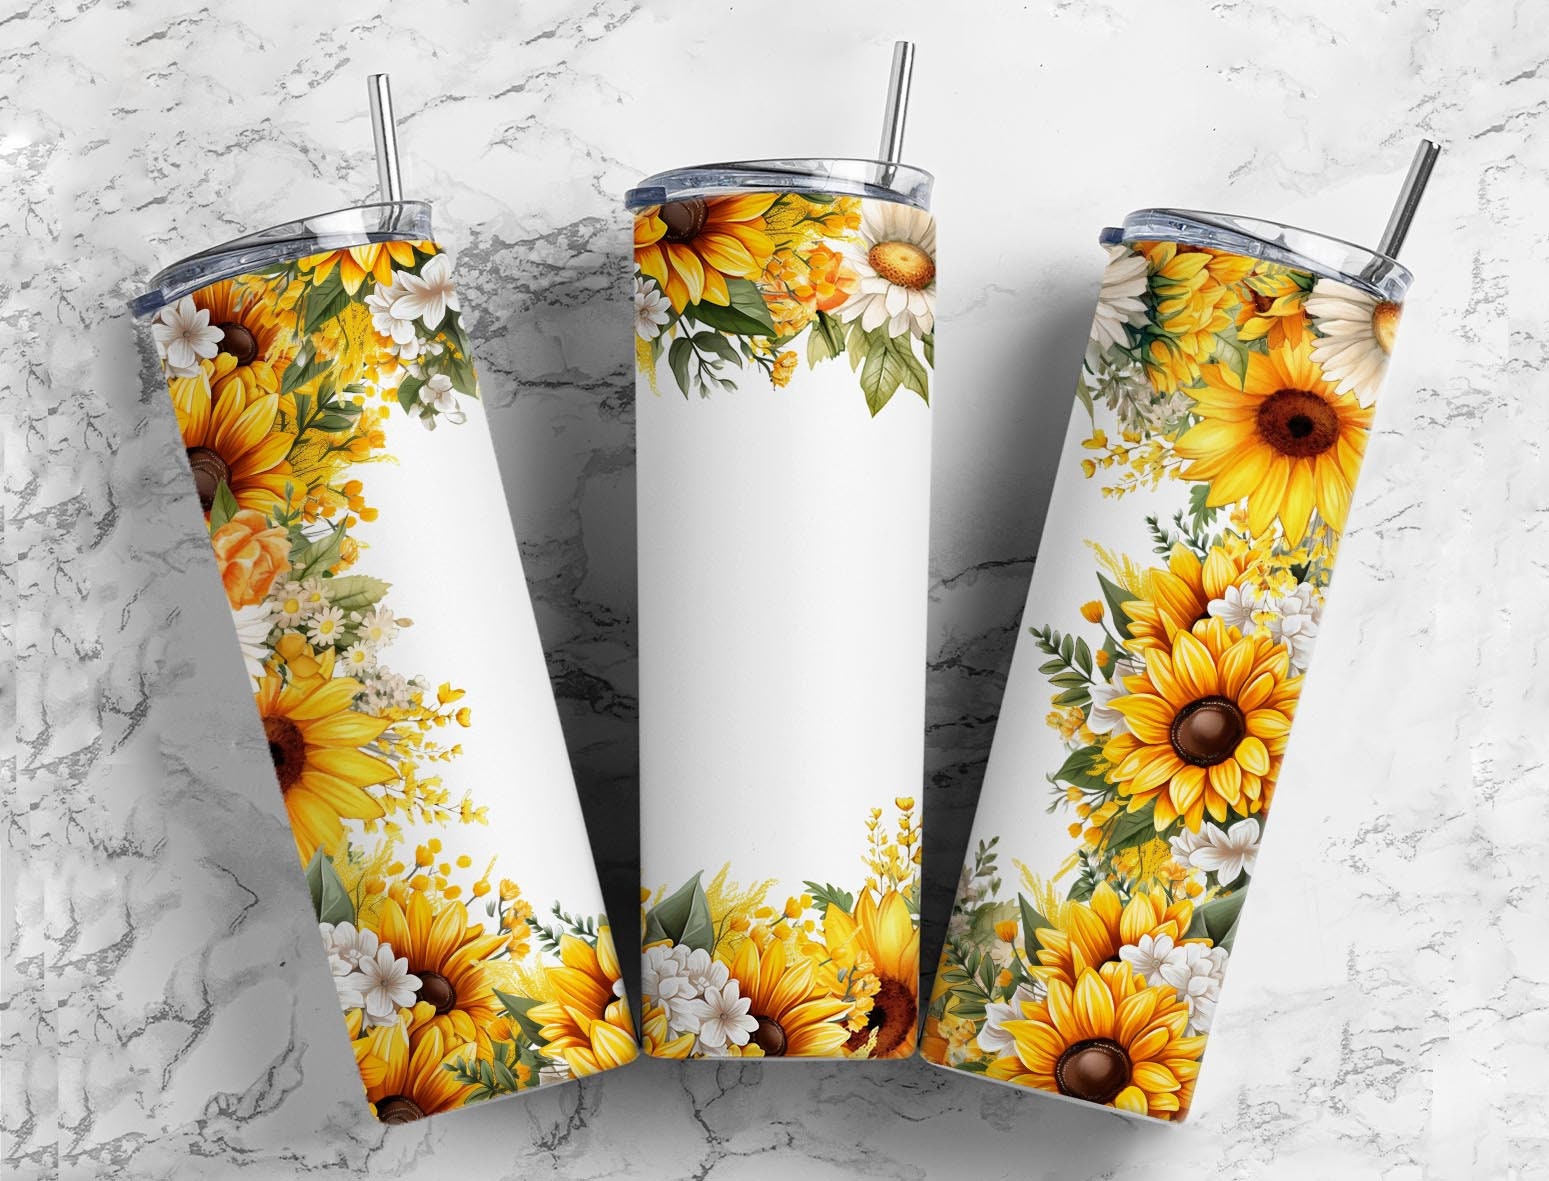 Girl Who Loves Books Sunflower Custom Glitter Tumbler Cup – Dragonfly  Drinkware & Designs